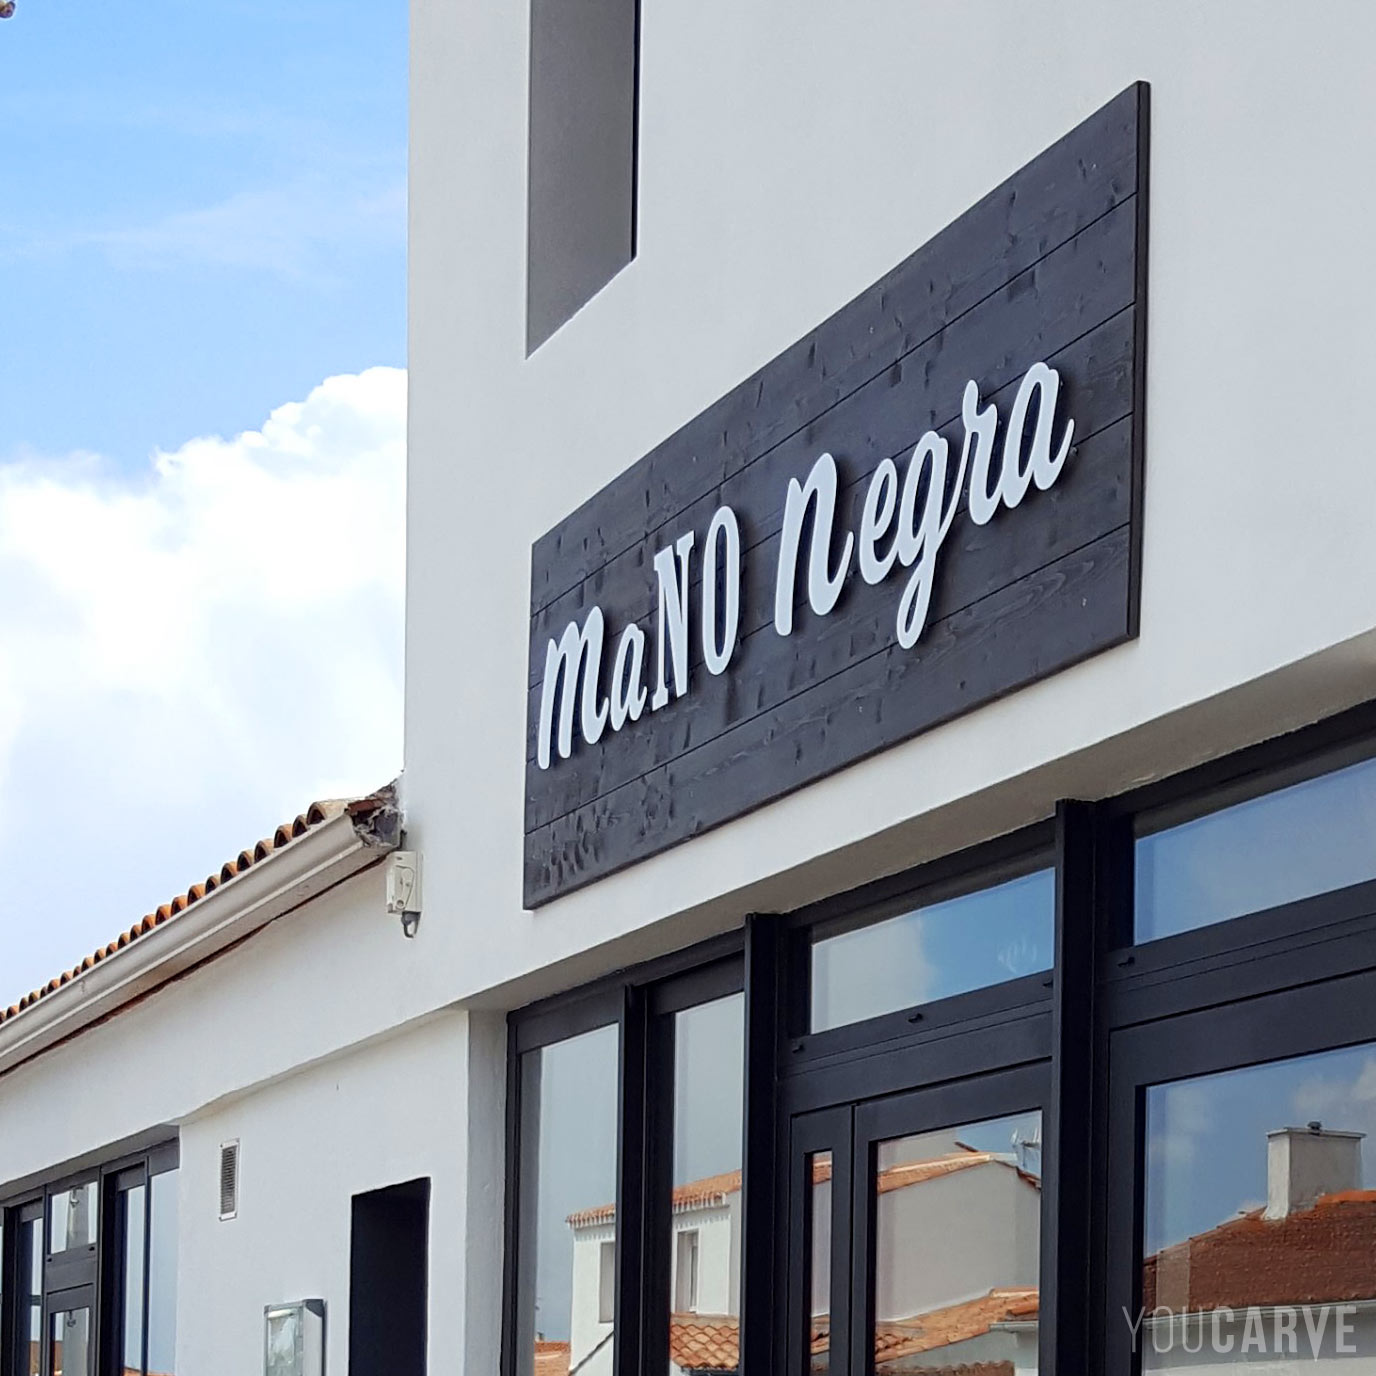 Réalisé par La Mano Negra : enseigne restaurant pizzeria à Noirmoutier, lettres découpées en aluminium-dibond laqué blanc mat (épaisseur 3 mm), fixation sur entretoises avec gabarit de perçage.